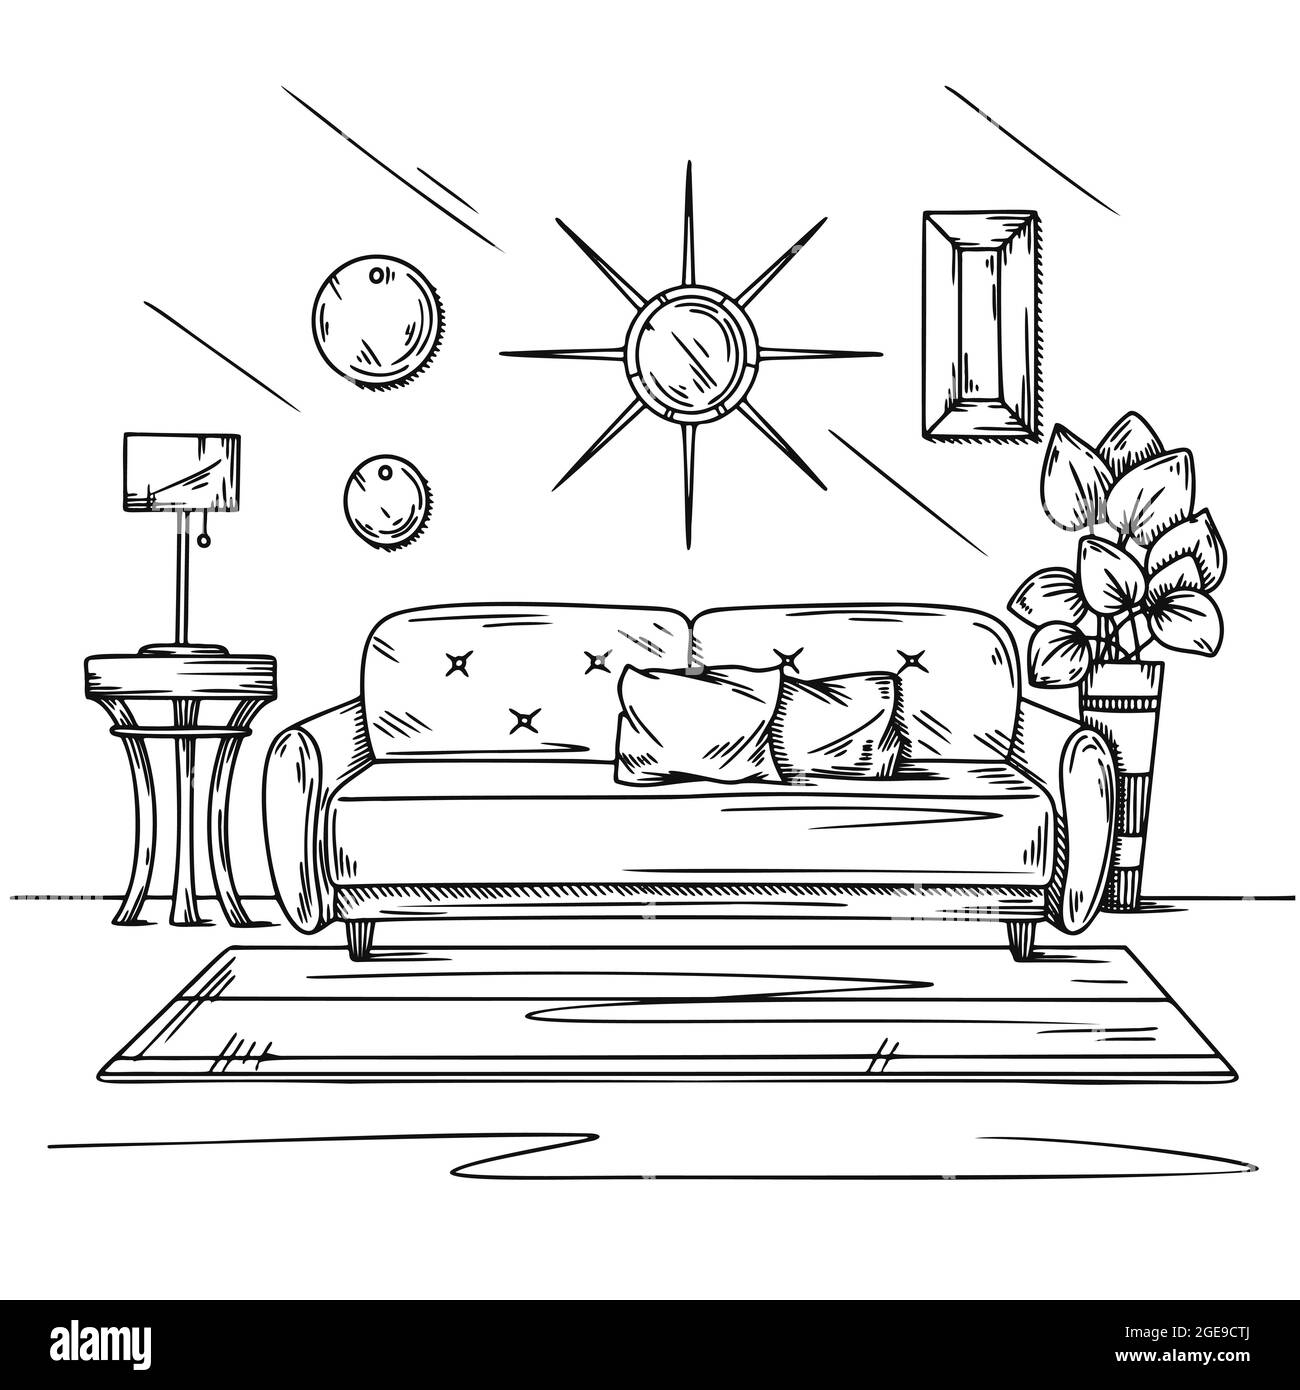 Disegno del salotto in nero su bianco. Disegno interno, divano, lampada e altri mobili. Illustrazione vettoriale Illustrazione Vettoriale